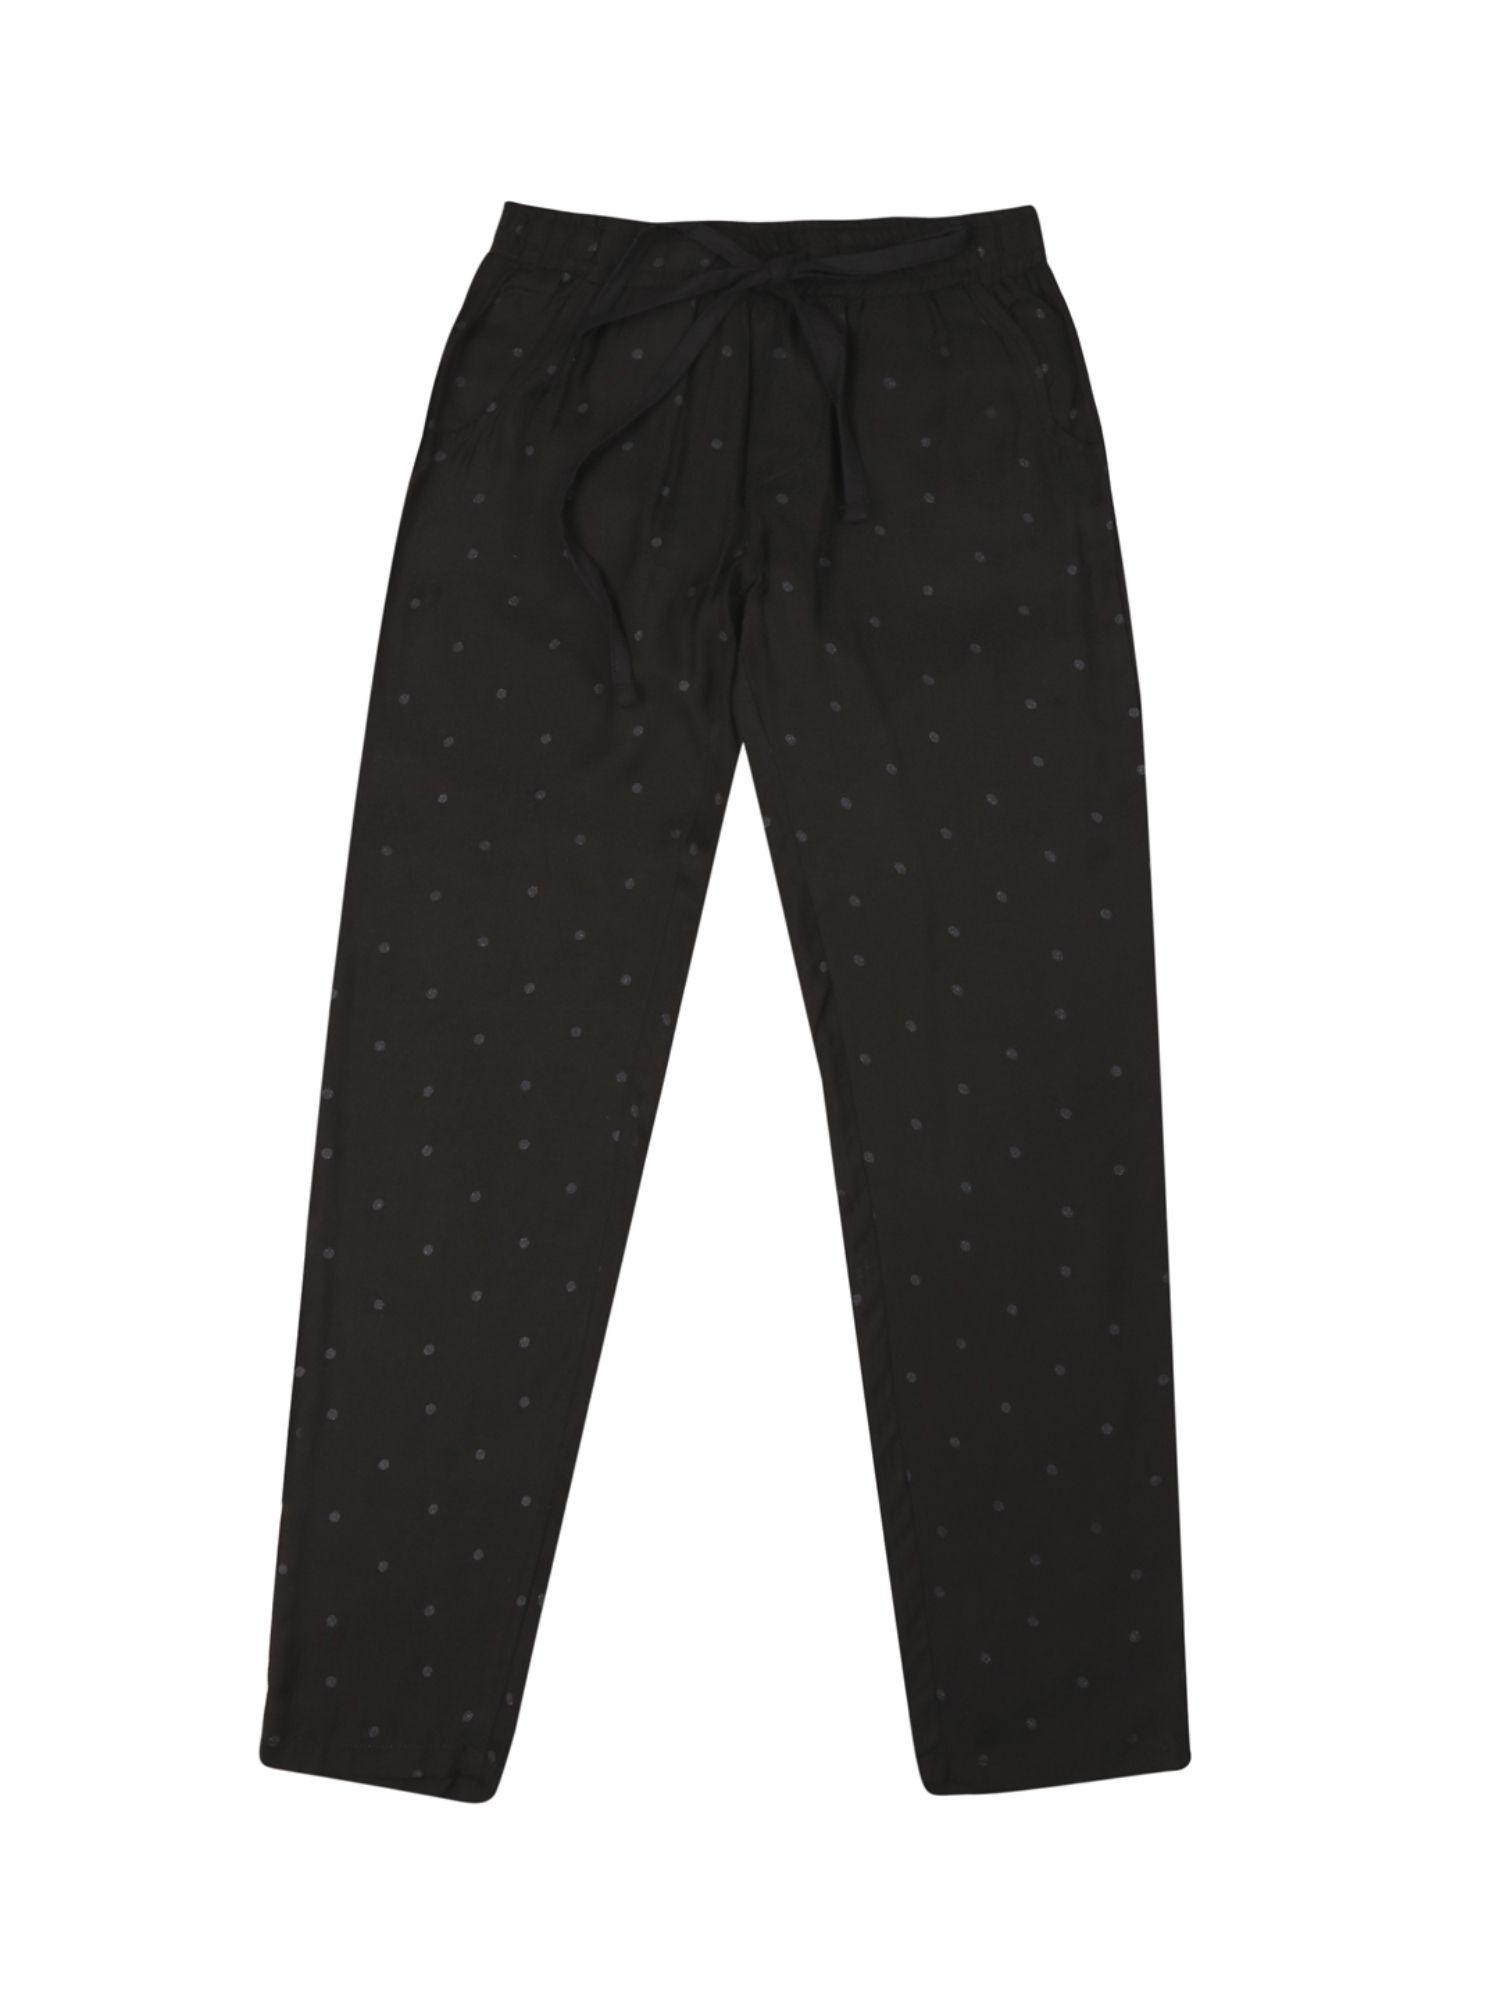 girls-black-cotton-polka-dot-elasticated-trouser